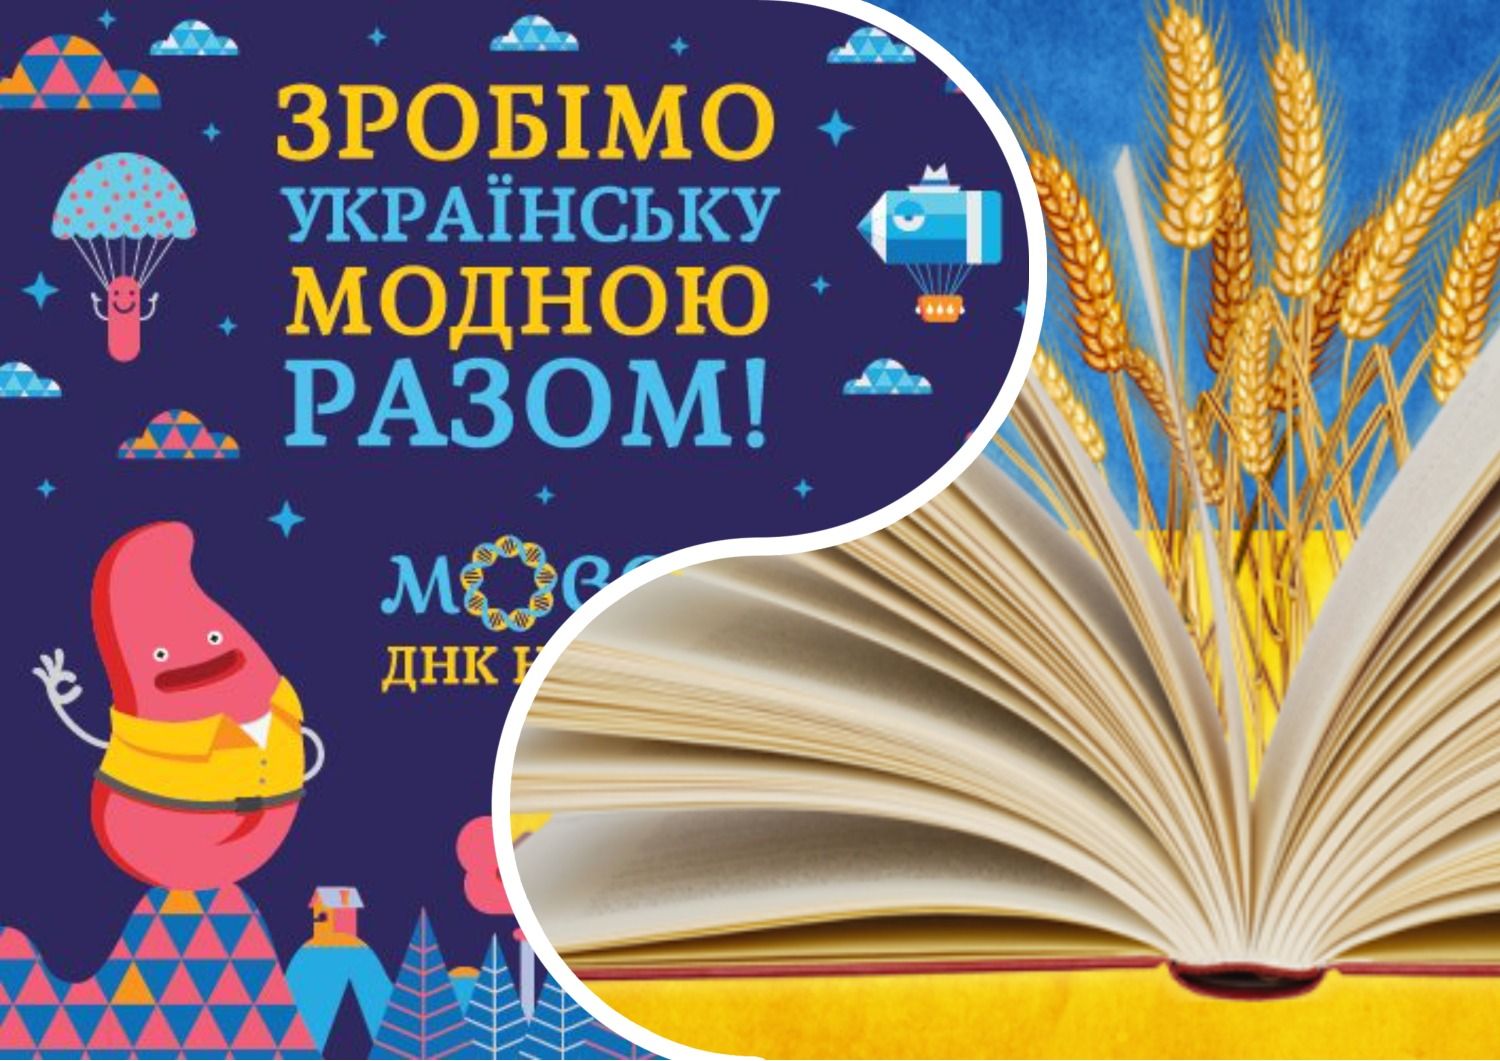 Антисуржик - как сказать правильно на украинском языке и забыть о суржике - 24 канал - Образование